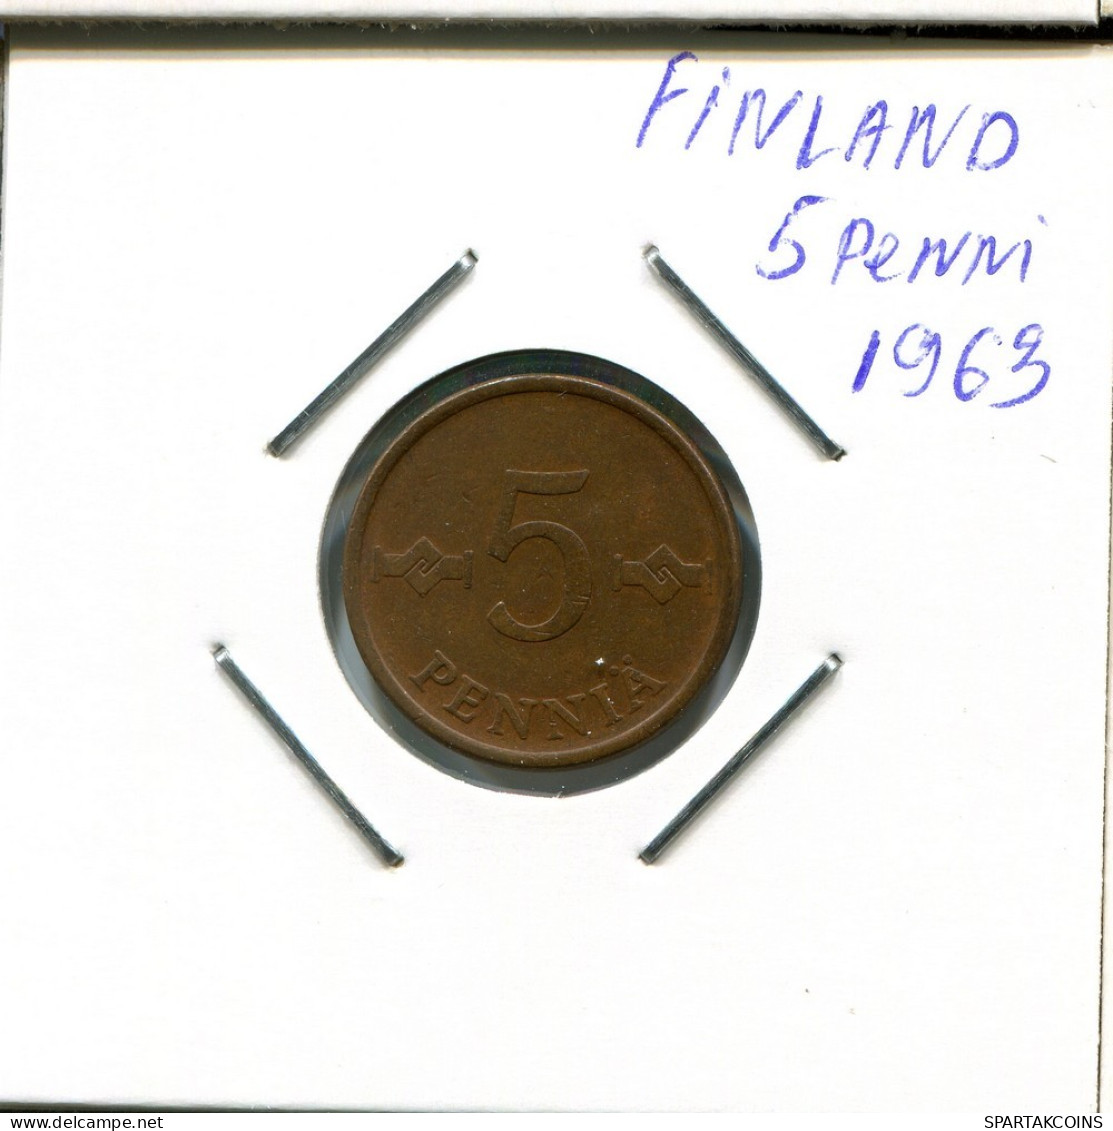 5 PENNY 1963 FINLANDIA FINLAND Moneda #AR334.E.A - Finnland